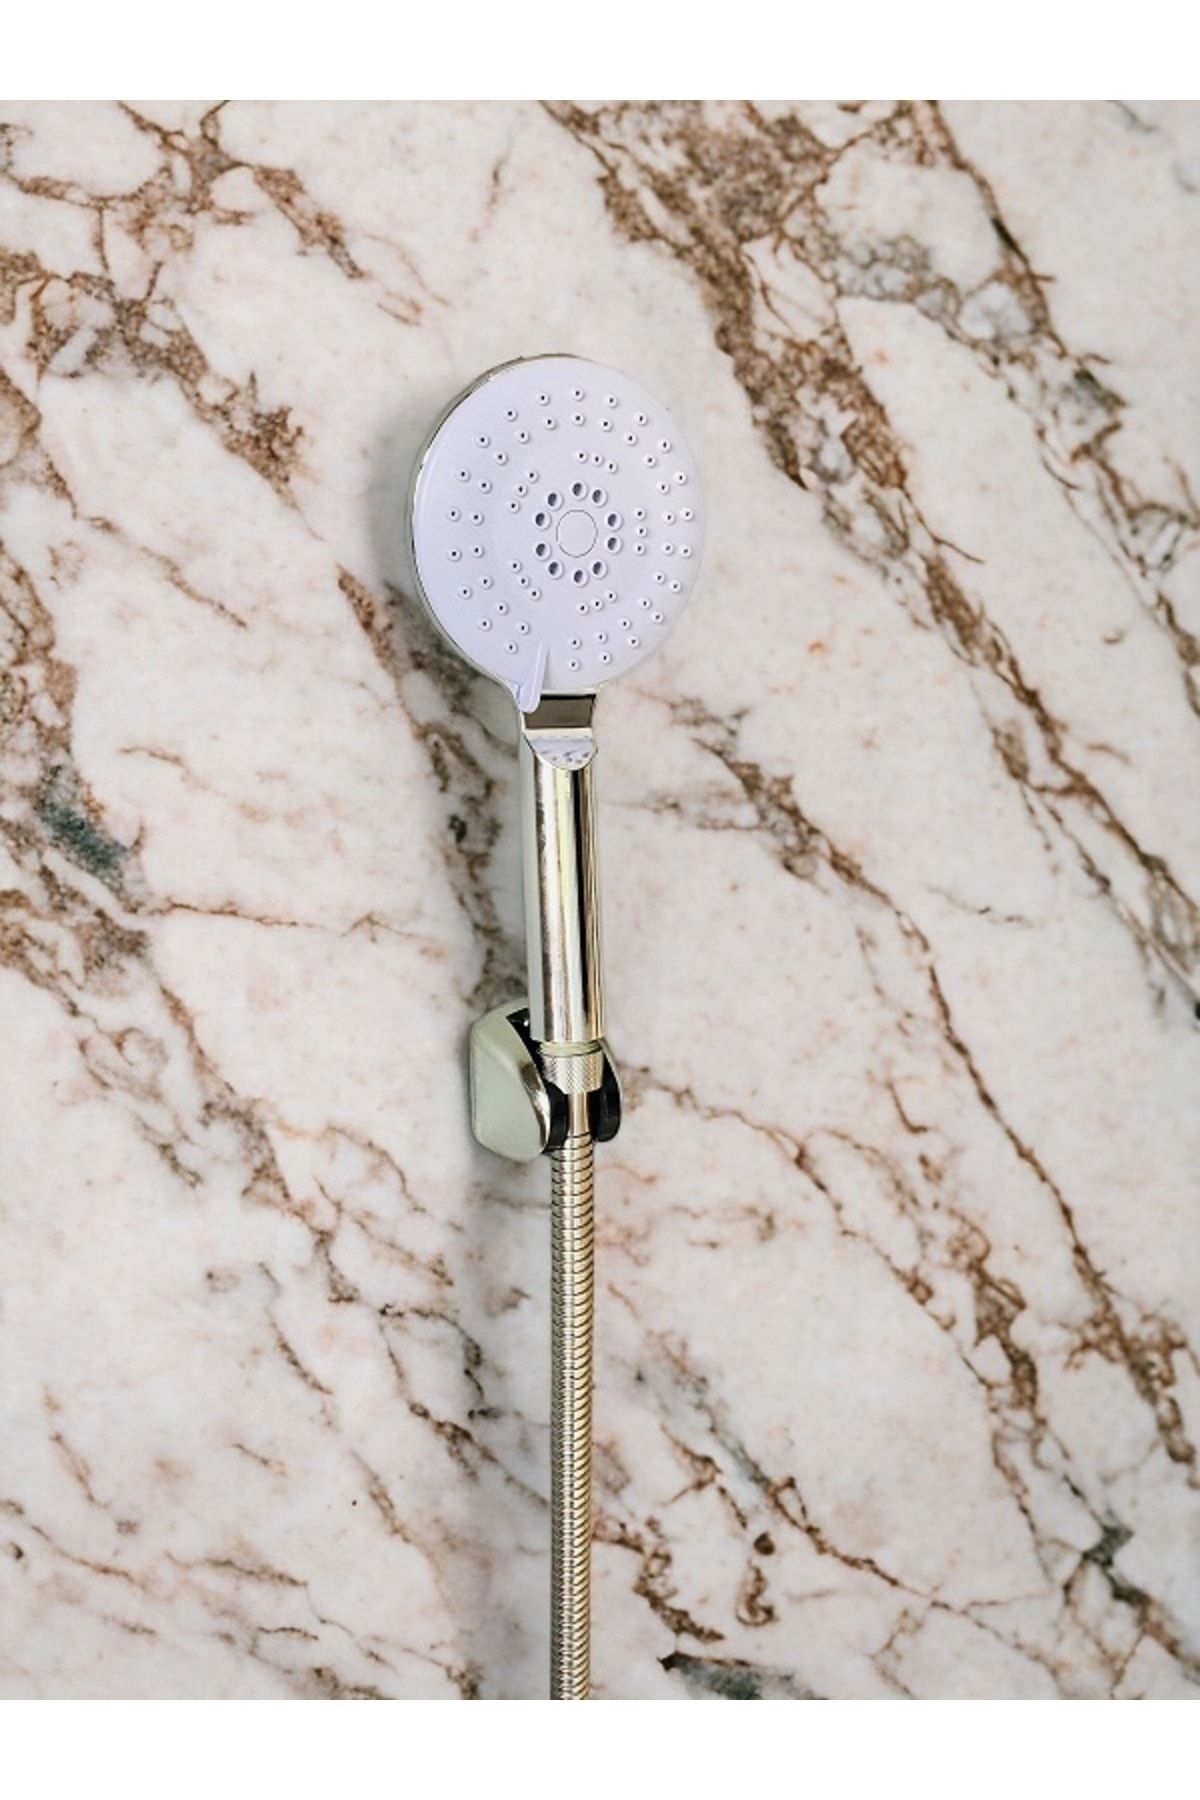 RENKYAPI Kaliteli Hortumlu Mafsallı Duş Telefonu Başlığı Duşluk Seti Banyo Kuvet Duşakabin Duş Spiralli